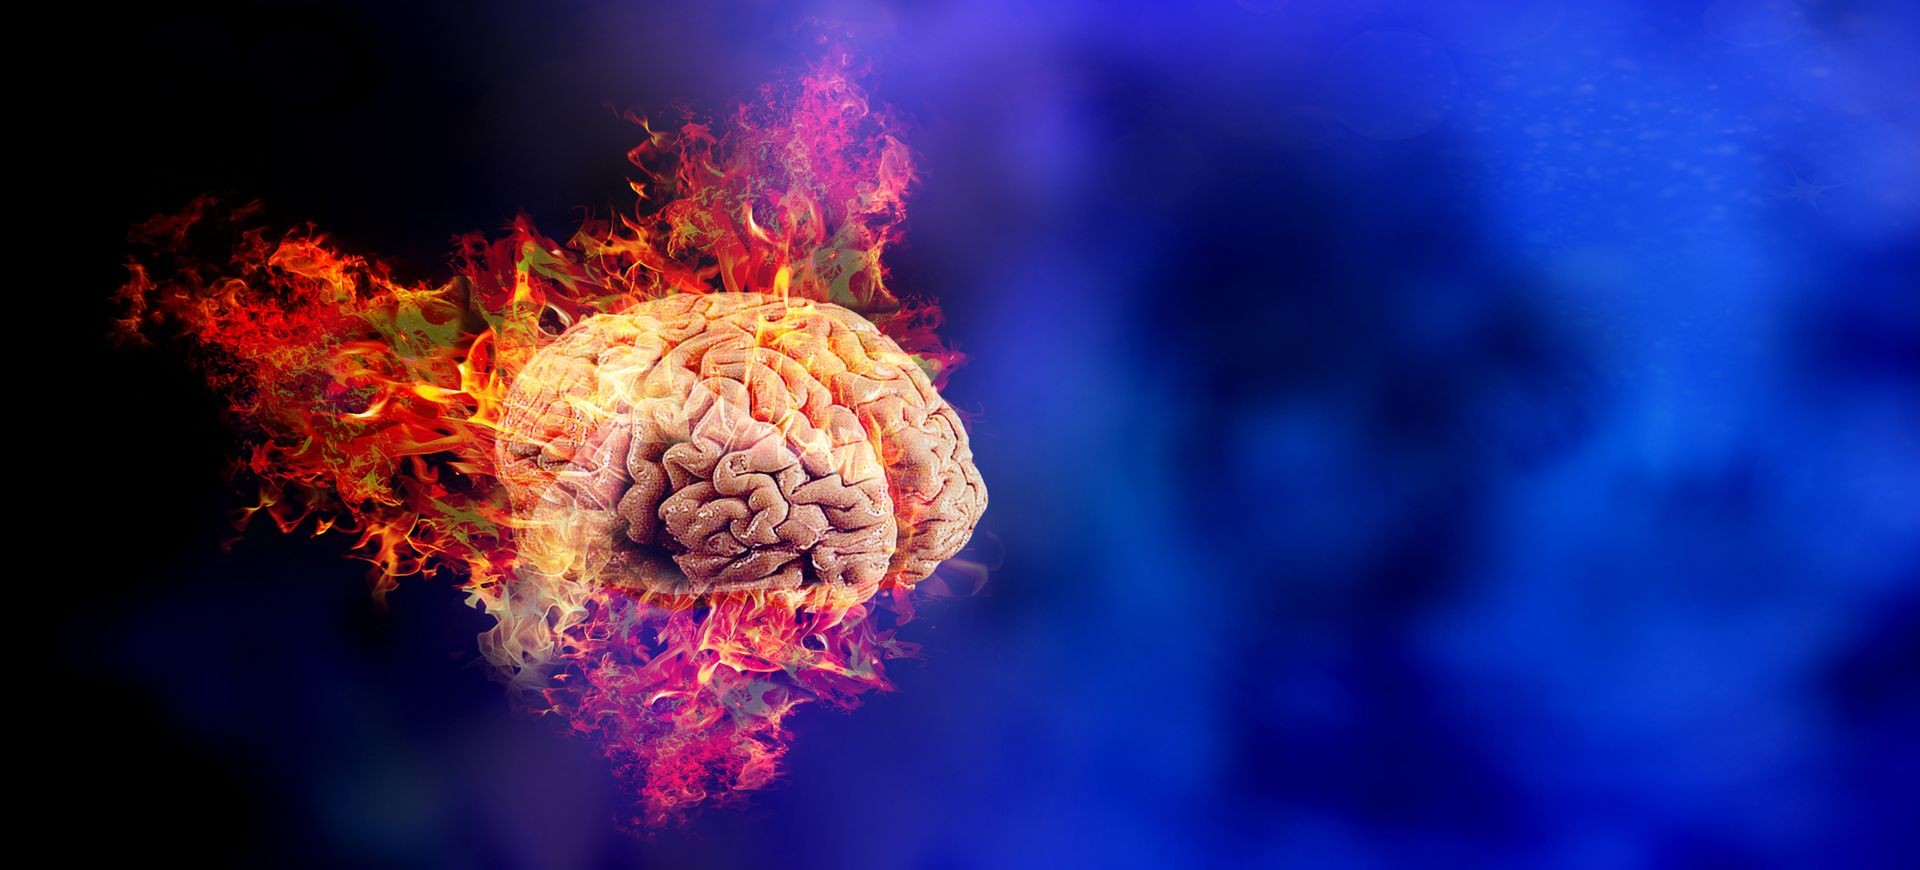 burning human brain.concept